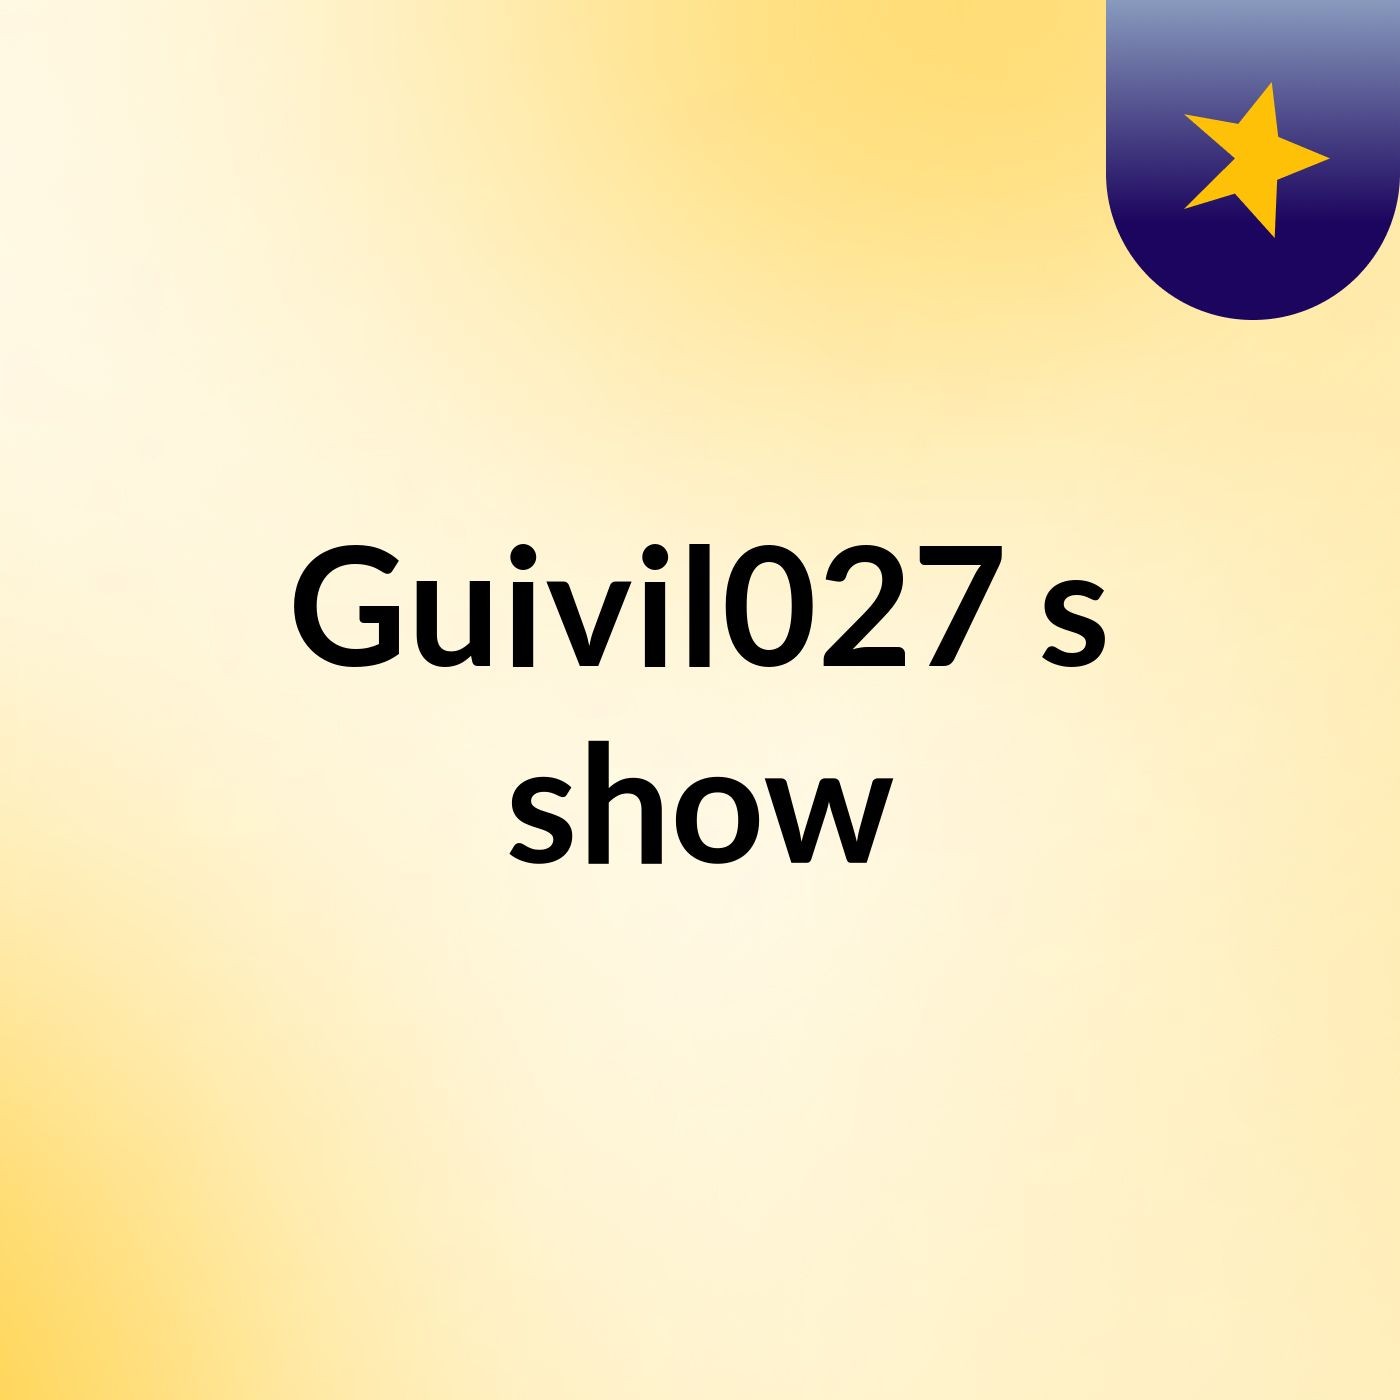 Guivil027's show